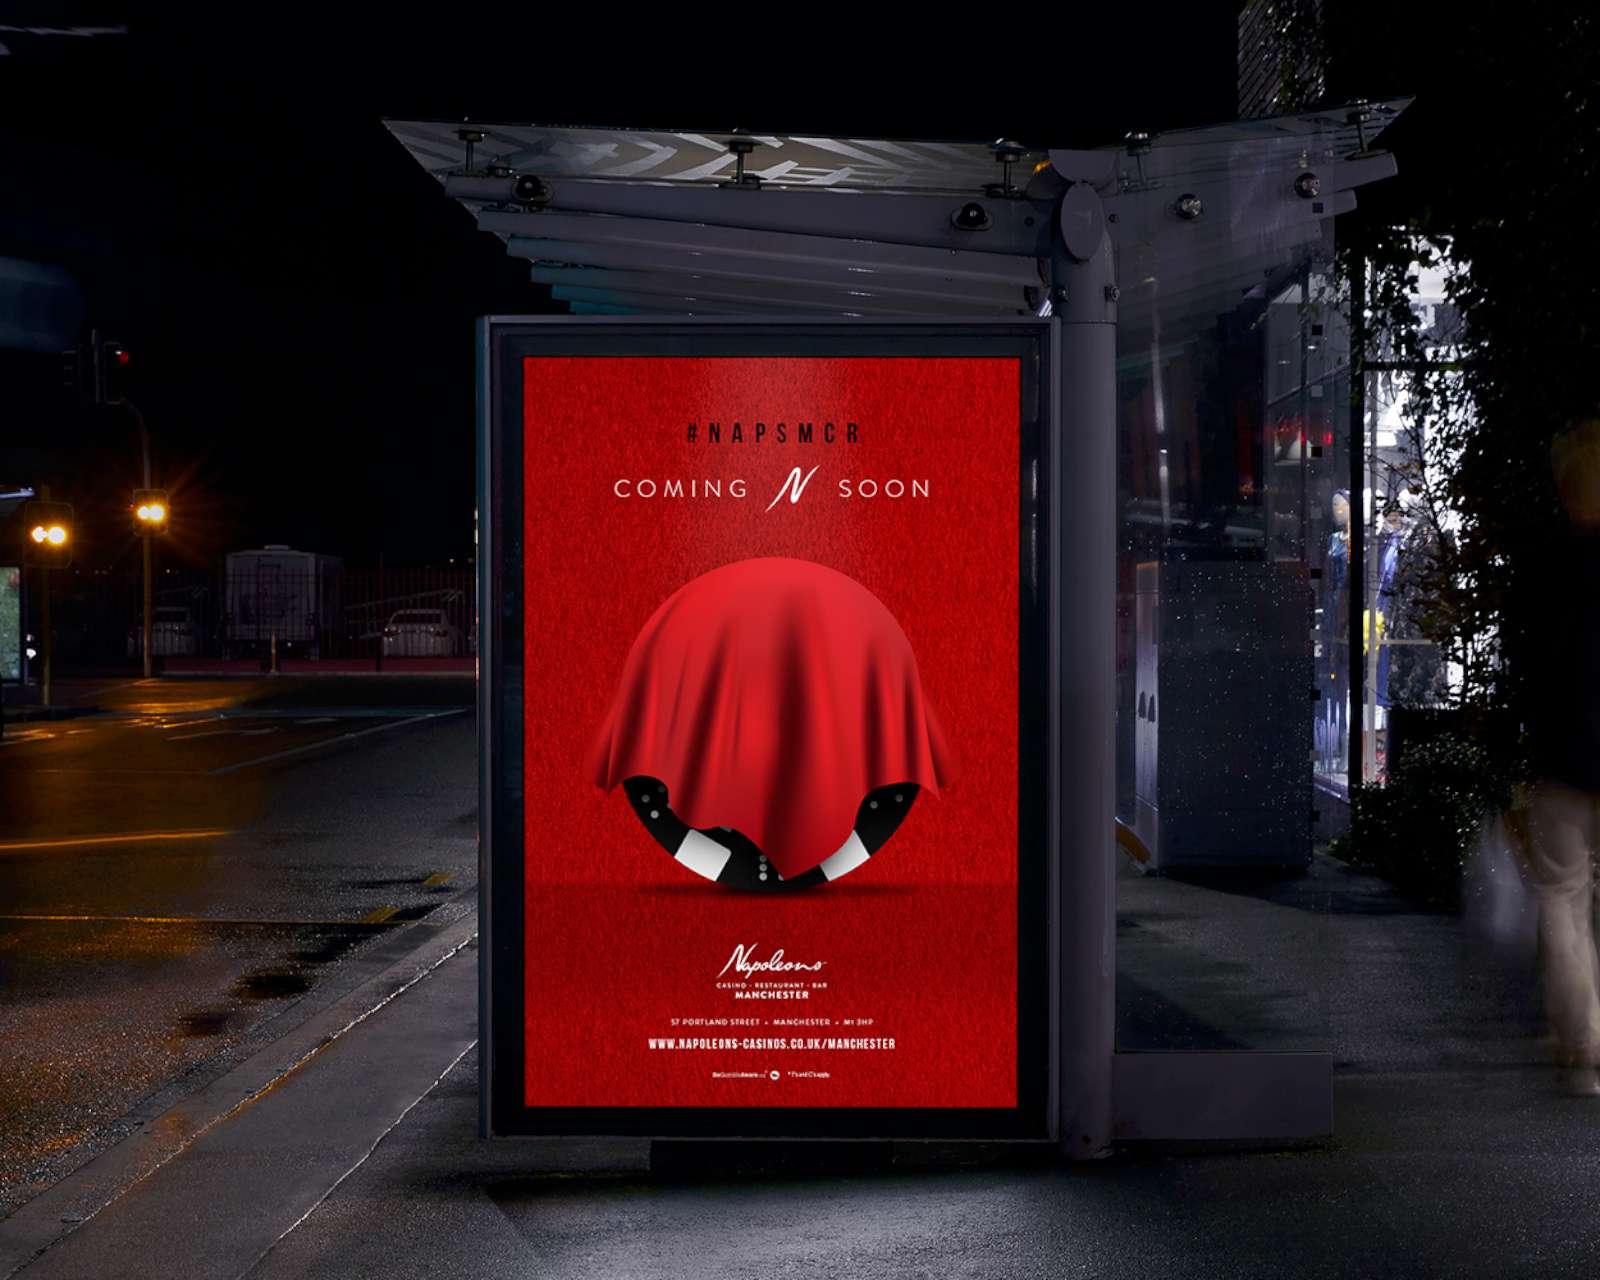 Napoleons Casino Manchester Launch Campaign - Fenti Marketing